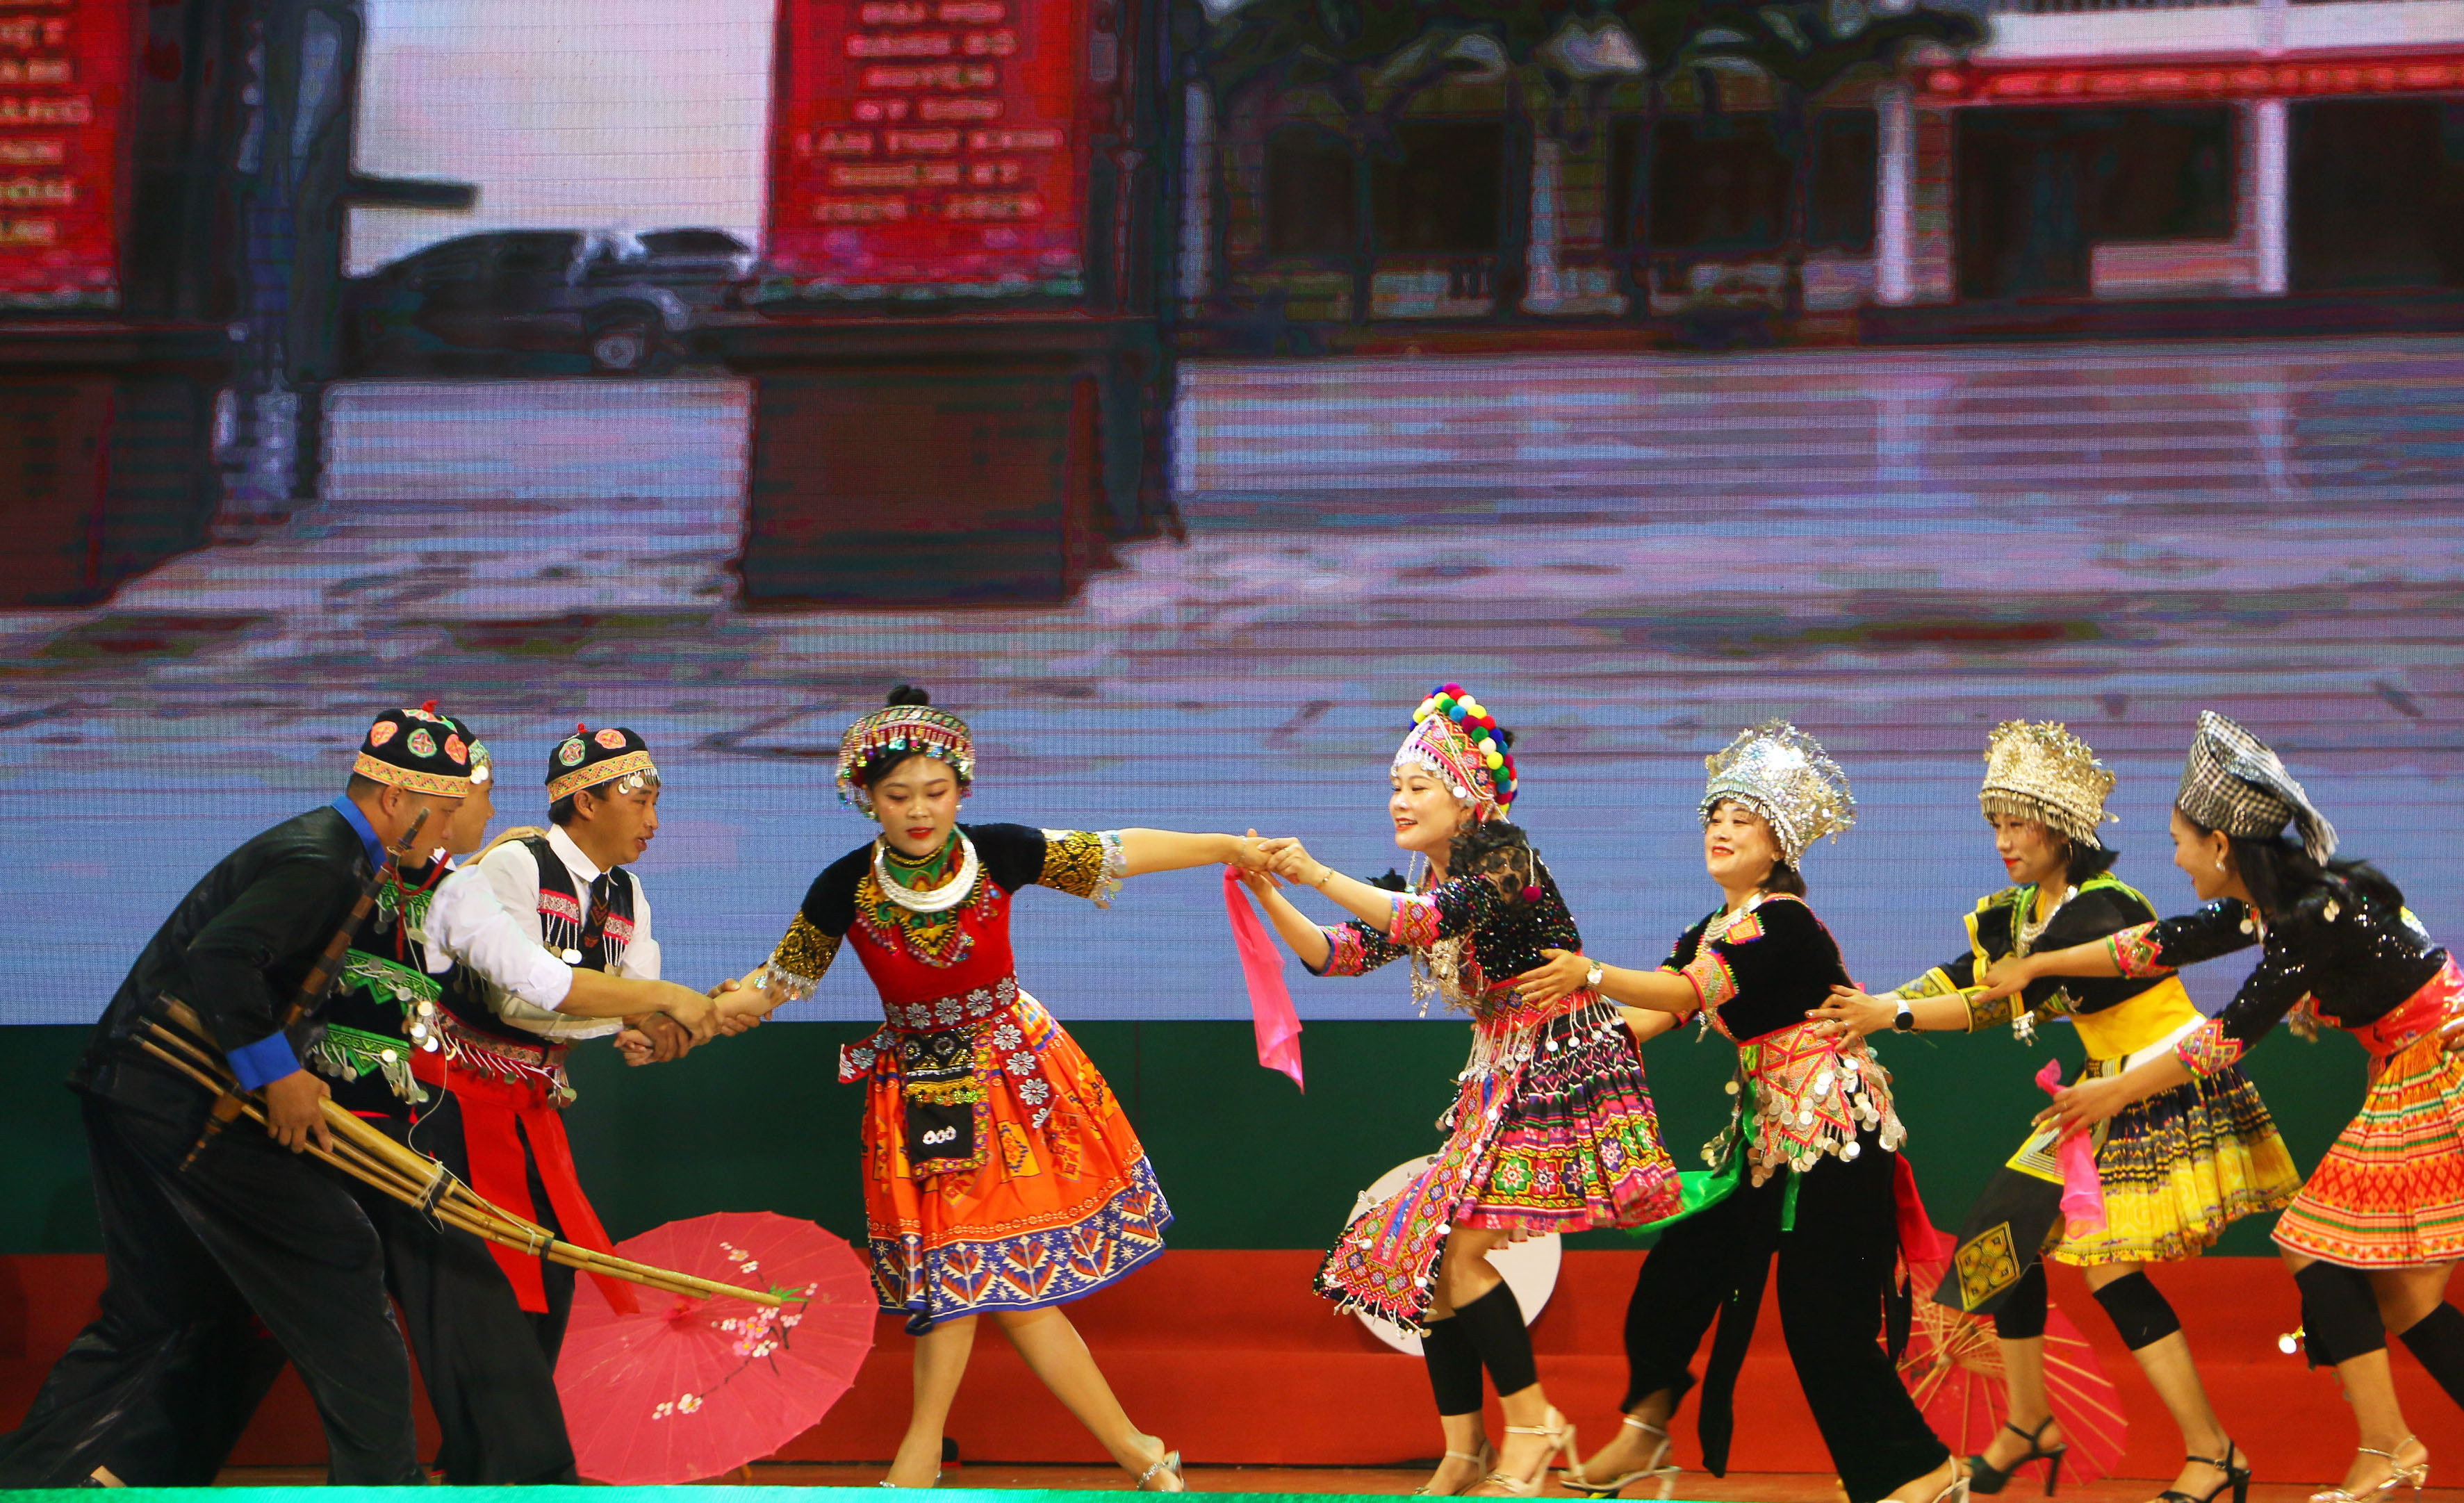 Phần thi giới thiệu mang đậm bản sắc văn hóa của đội thi của huyện Kỳ Sơn. Ảnh: An Quỳnh.